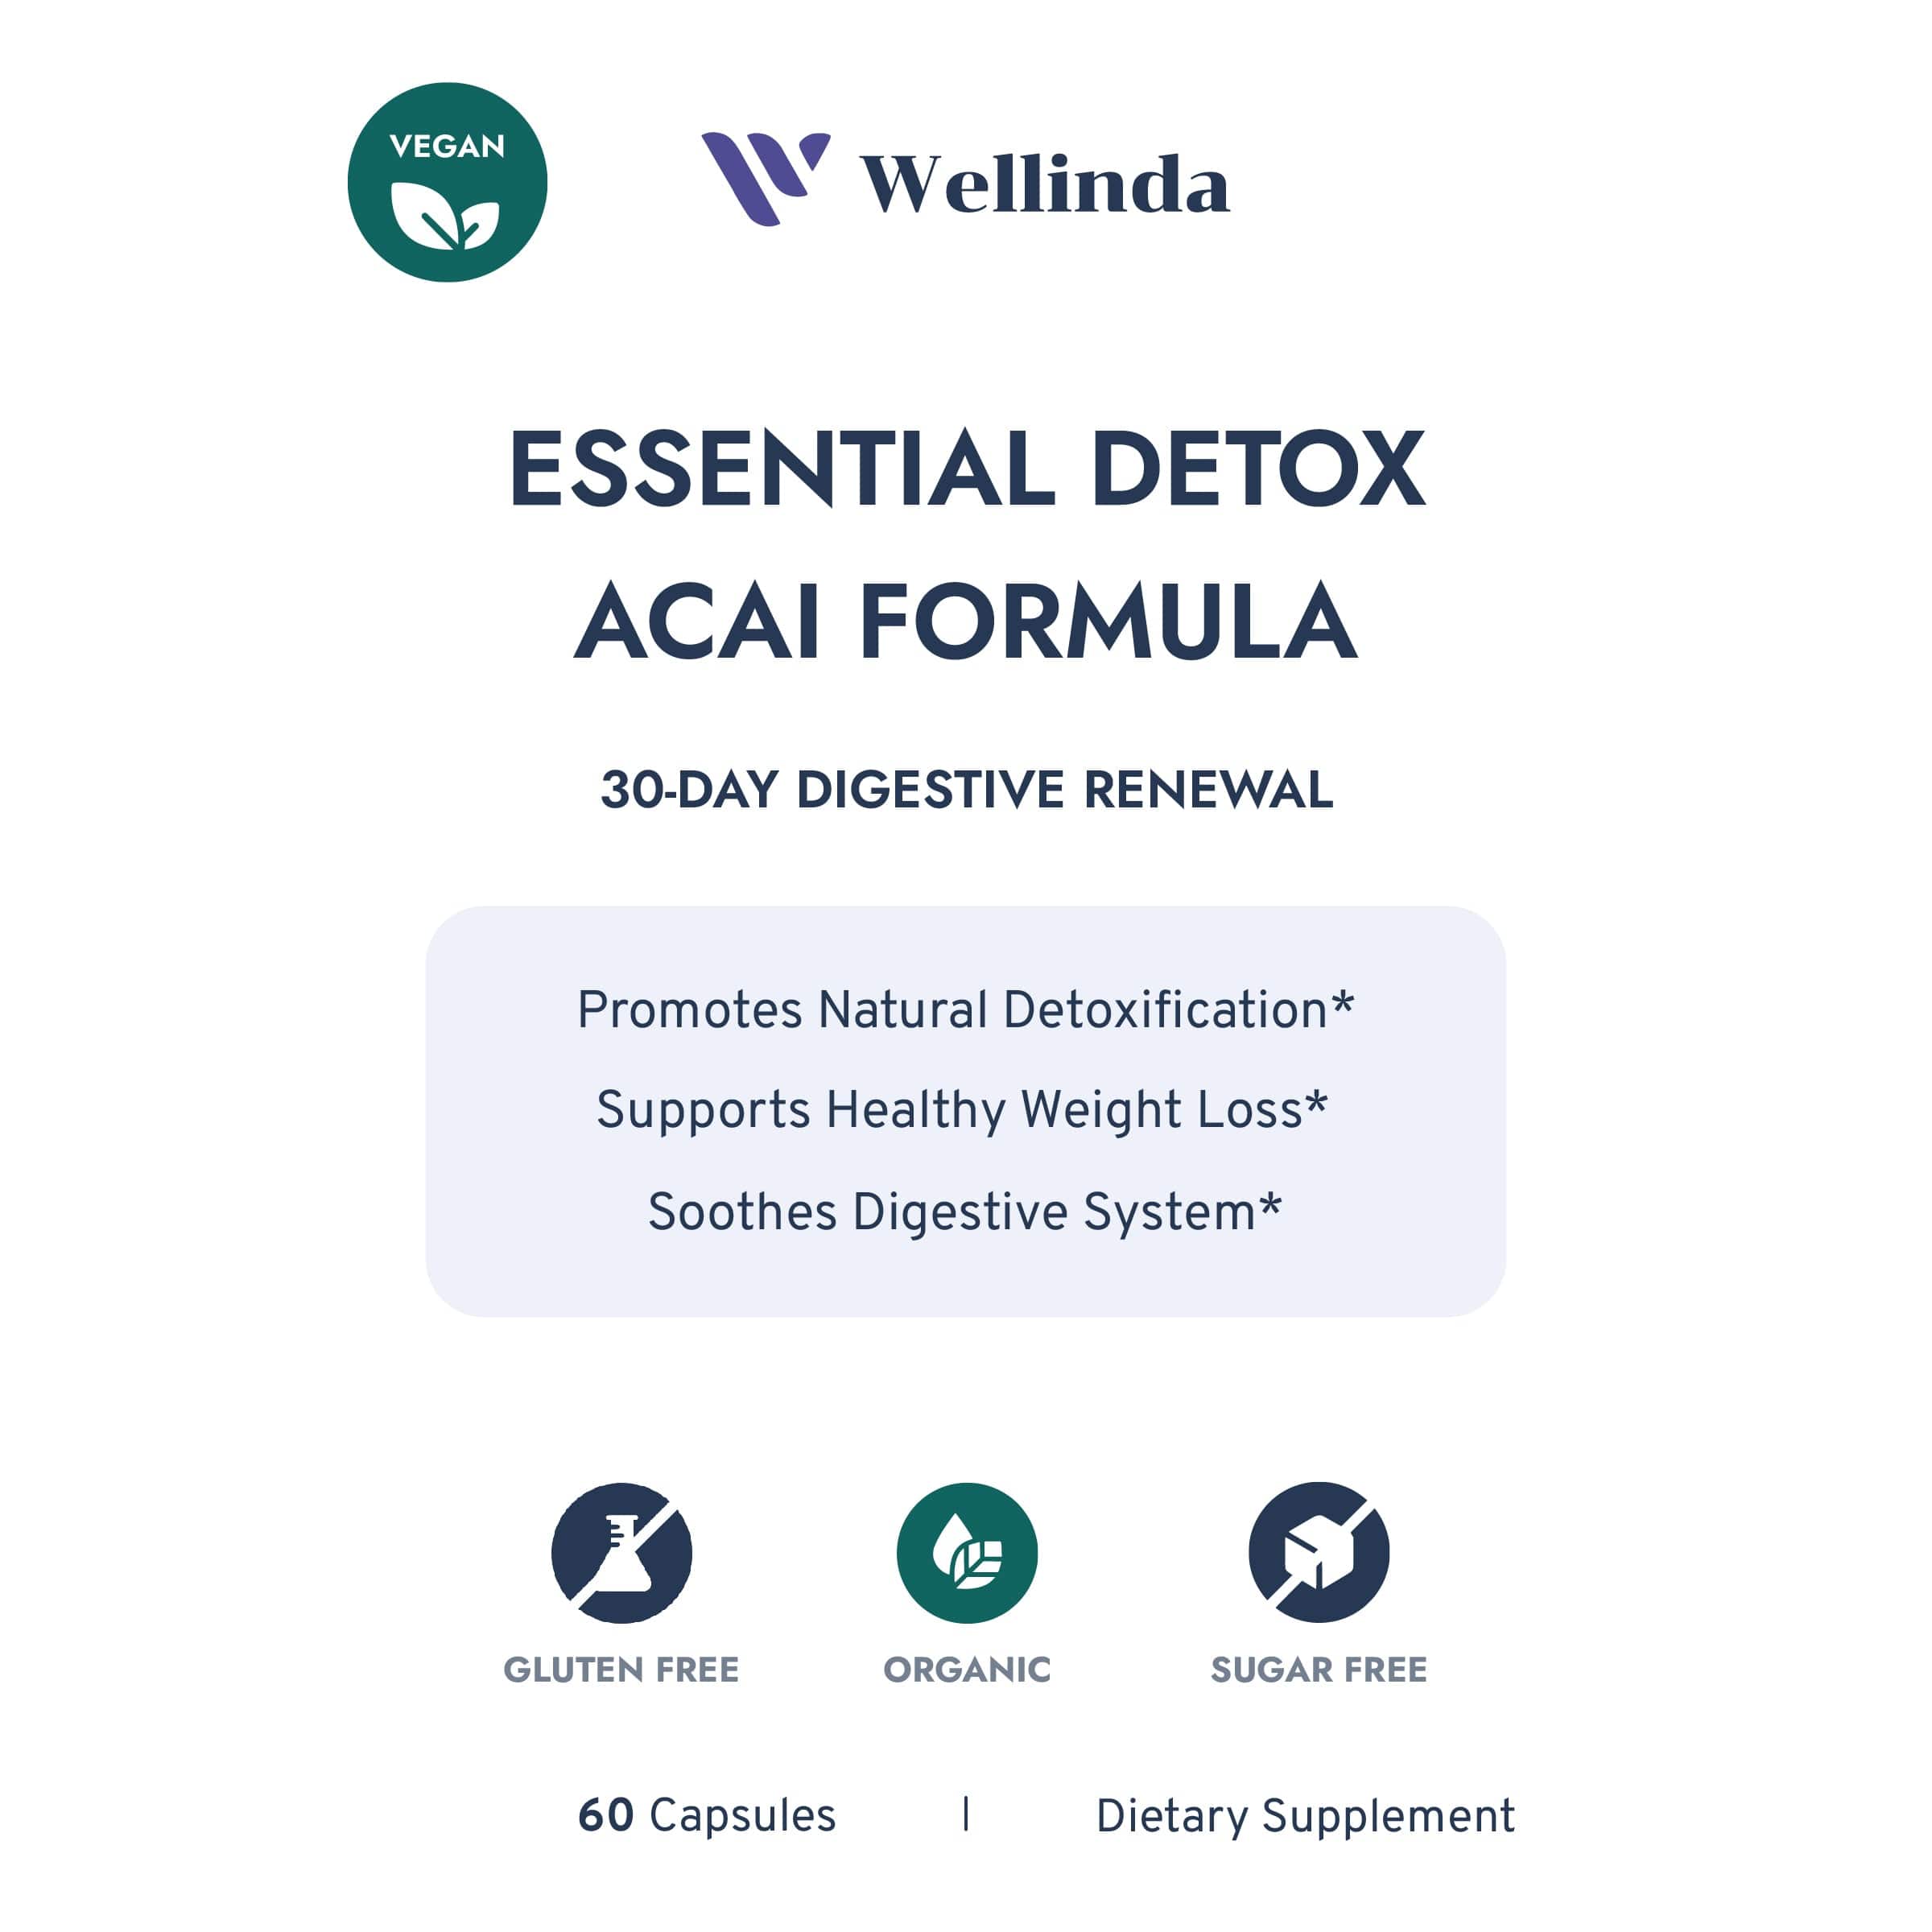 Essential Detox: Acai Formula